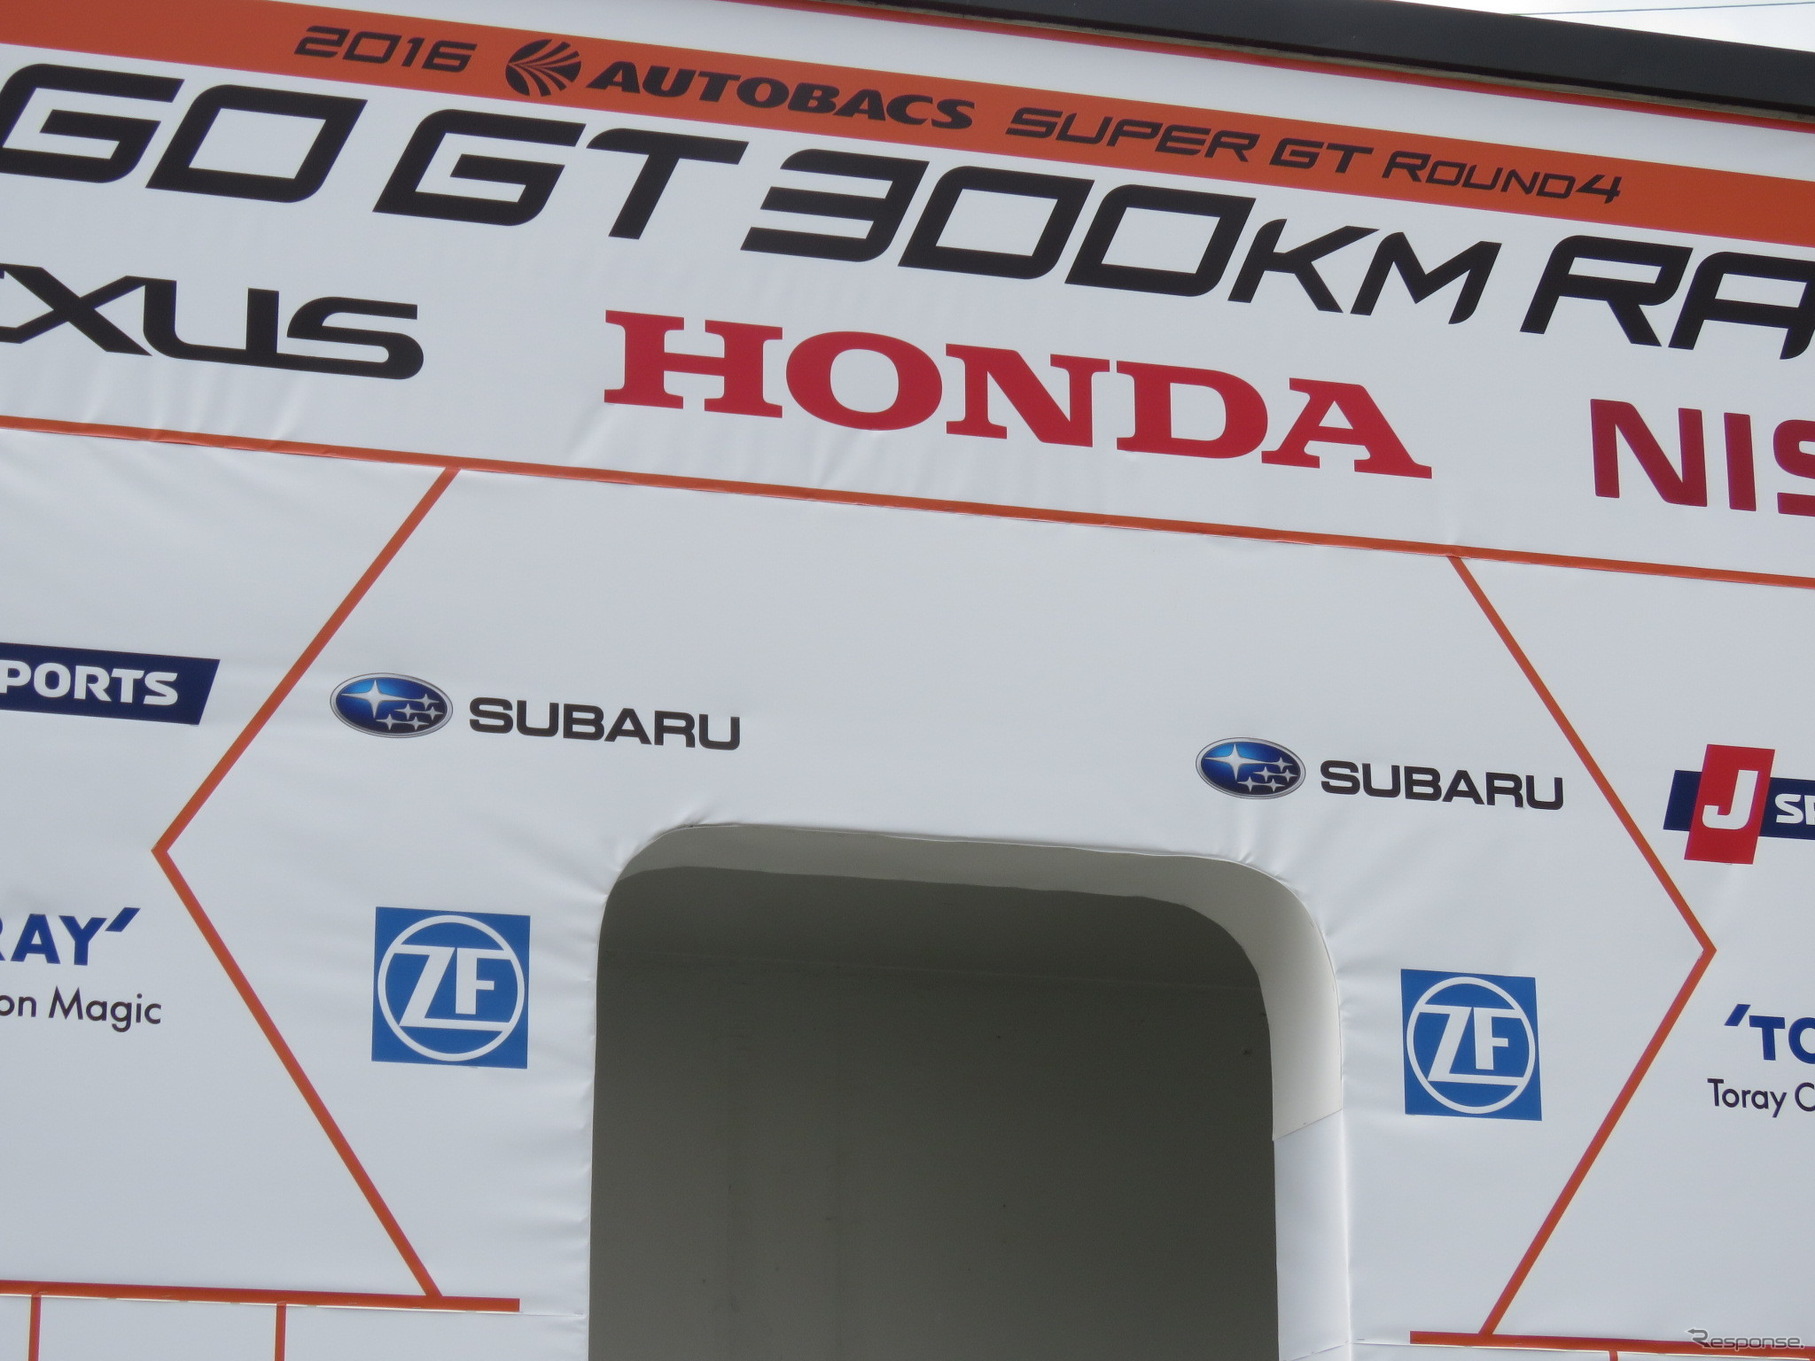 ZF社はSUPER GTにシリーズパートナーとして深く関わっている。